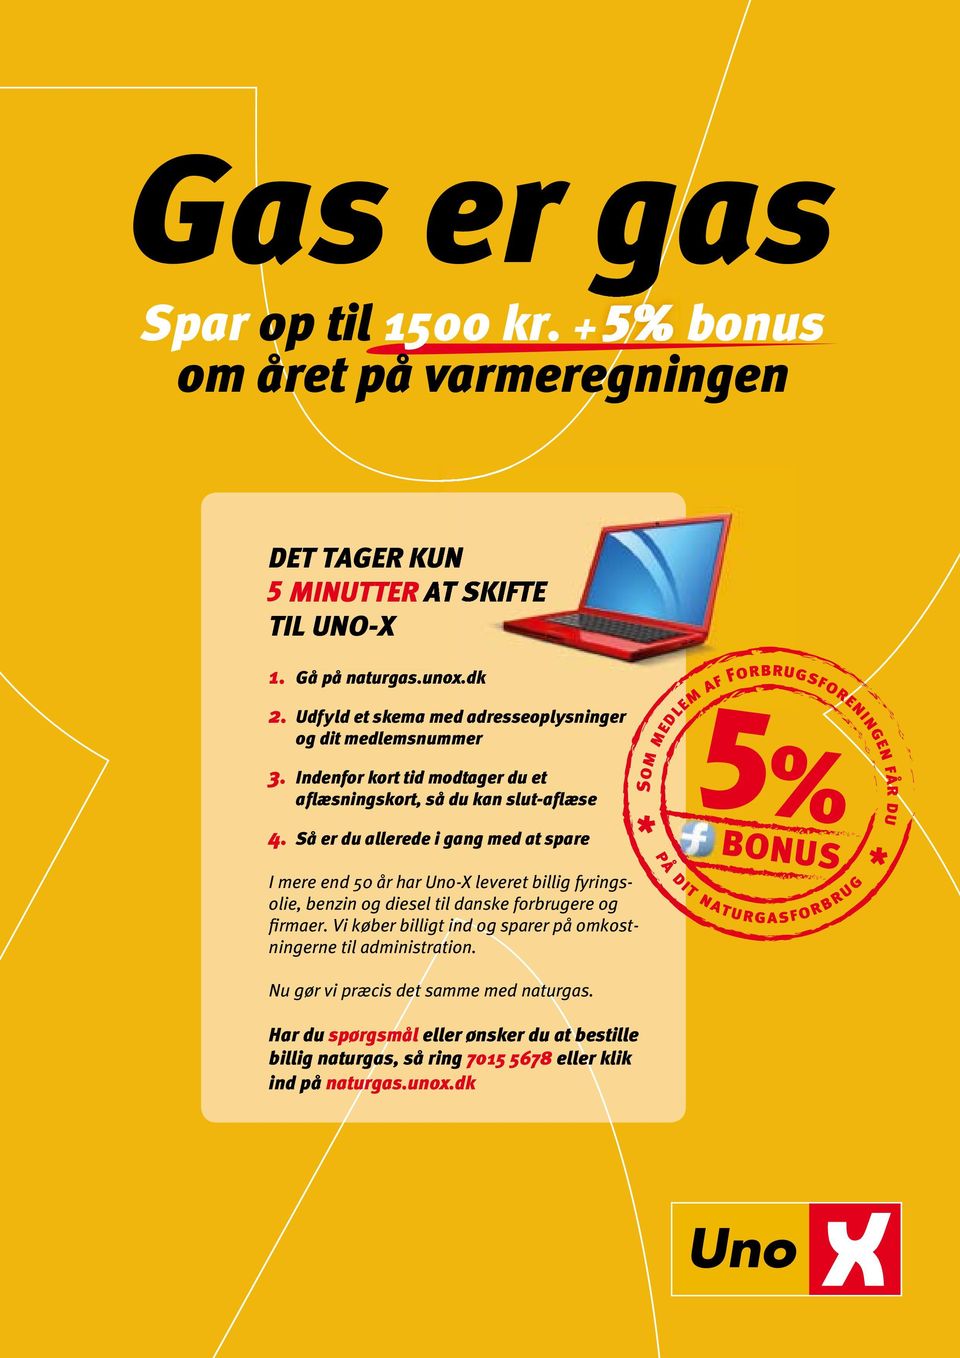 Så er du allerede i gang med at spare I mere end 50 år har Uno-X leveret billig fyringsolie, benzin og diesel til danske forbrugere og firmaer.